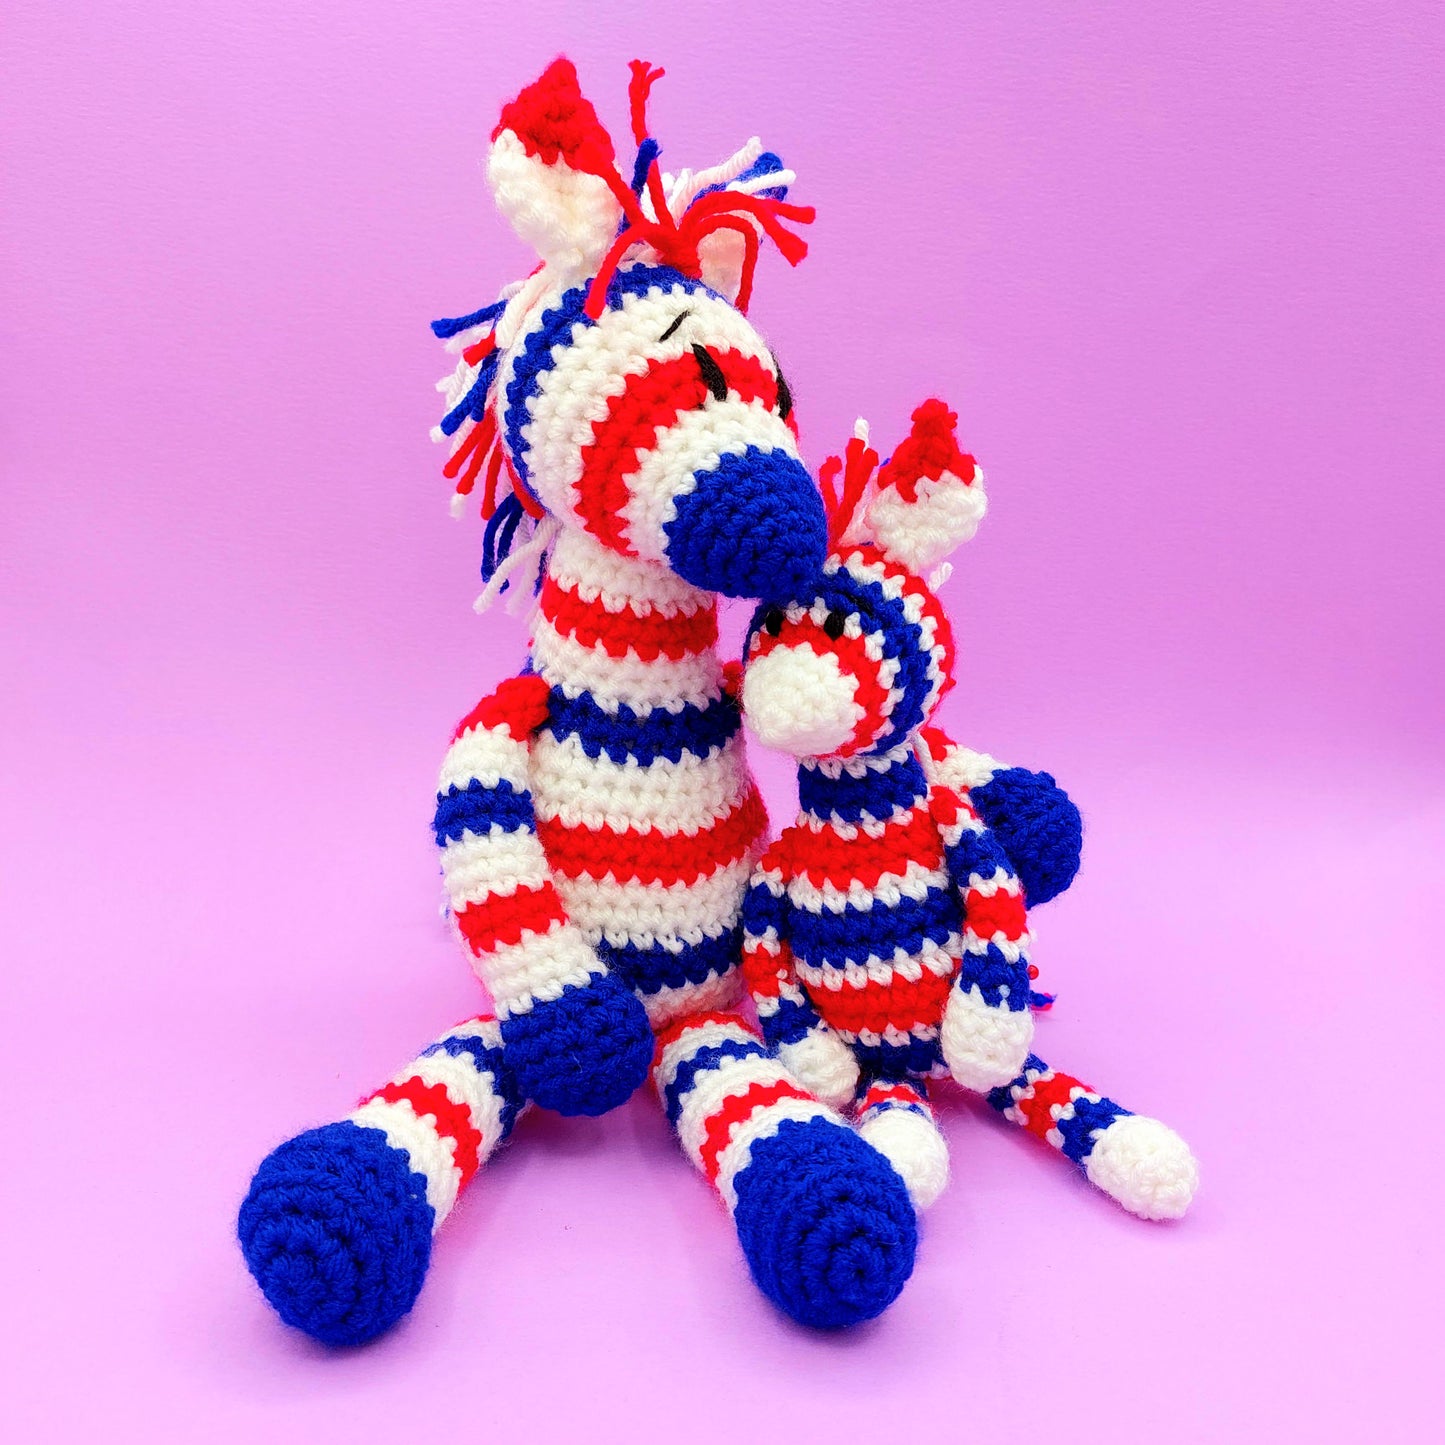 SPECIAL EDITION JUBILEE Zebras Crochet Kit